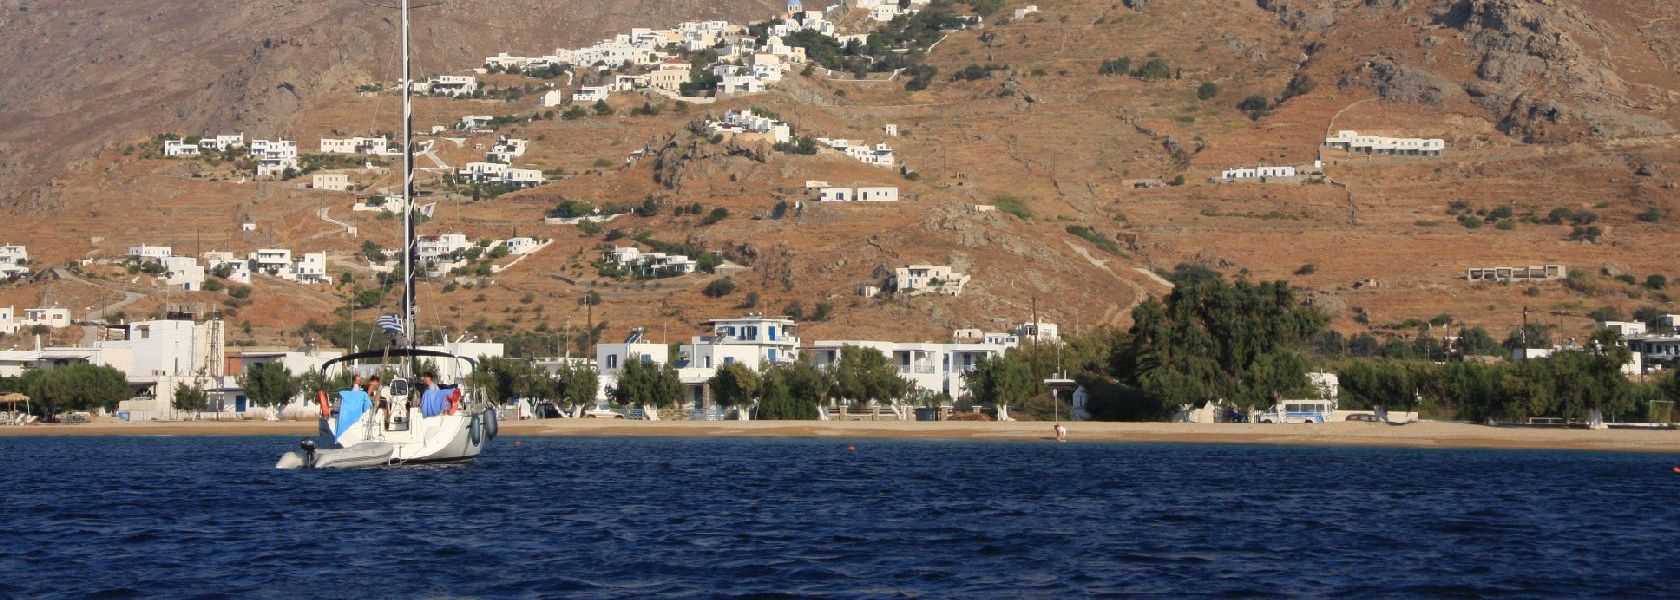 Seriphos Bay Leivadiou